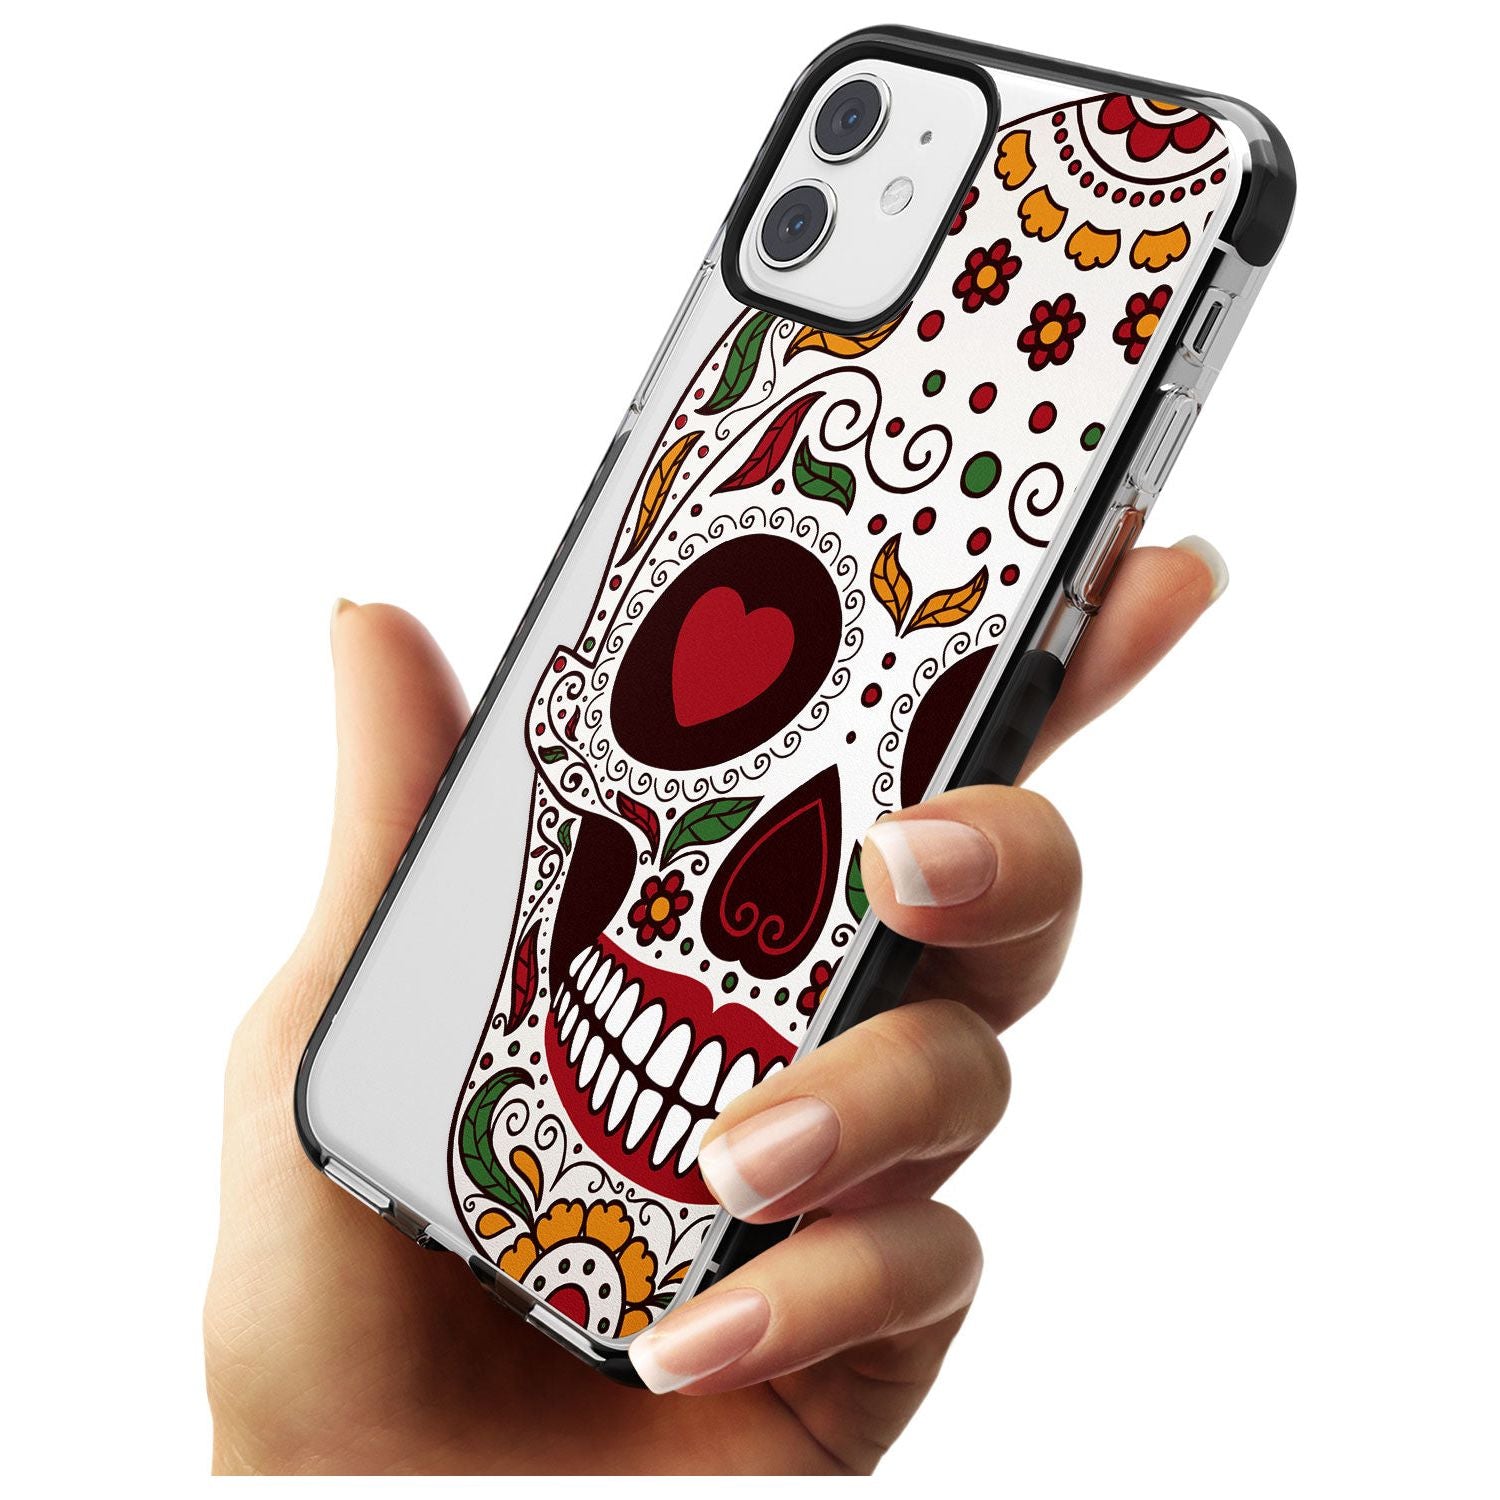 Autumn Sugar Skull Black Impact Phone Case for iPhone 11 Pro Max